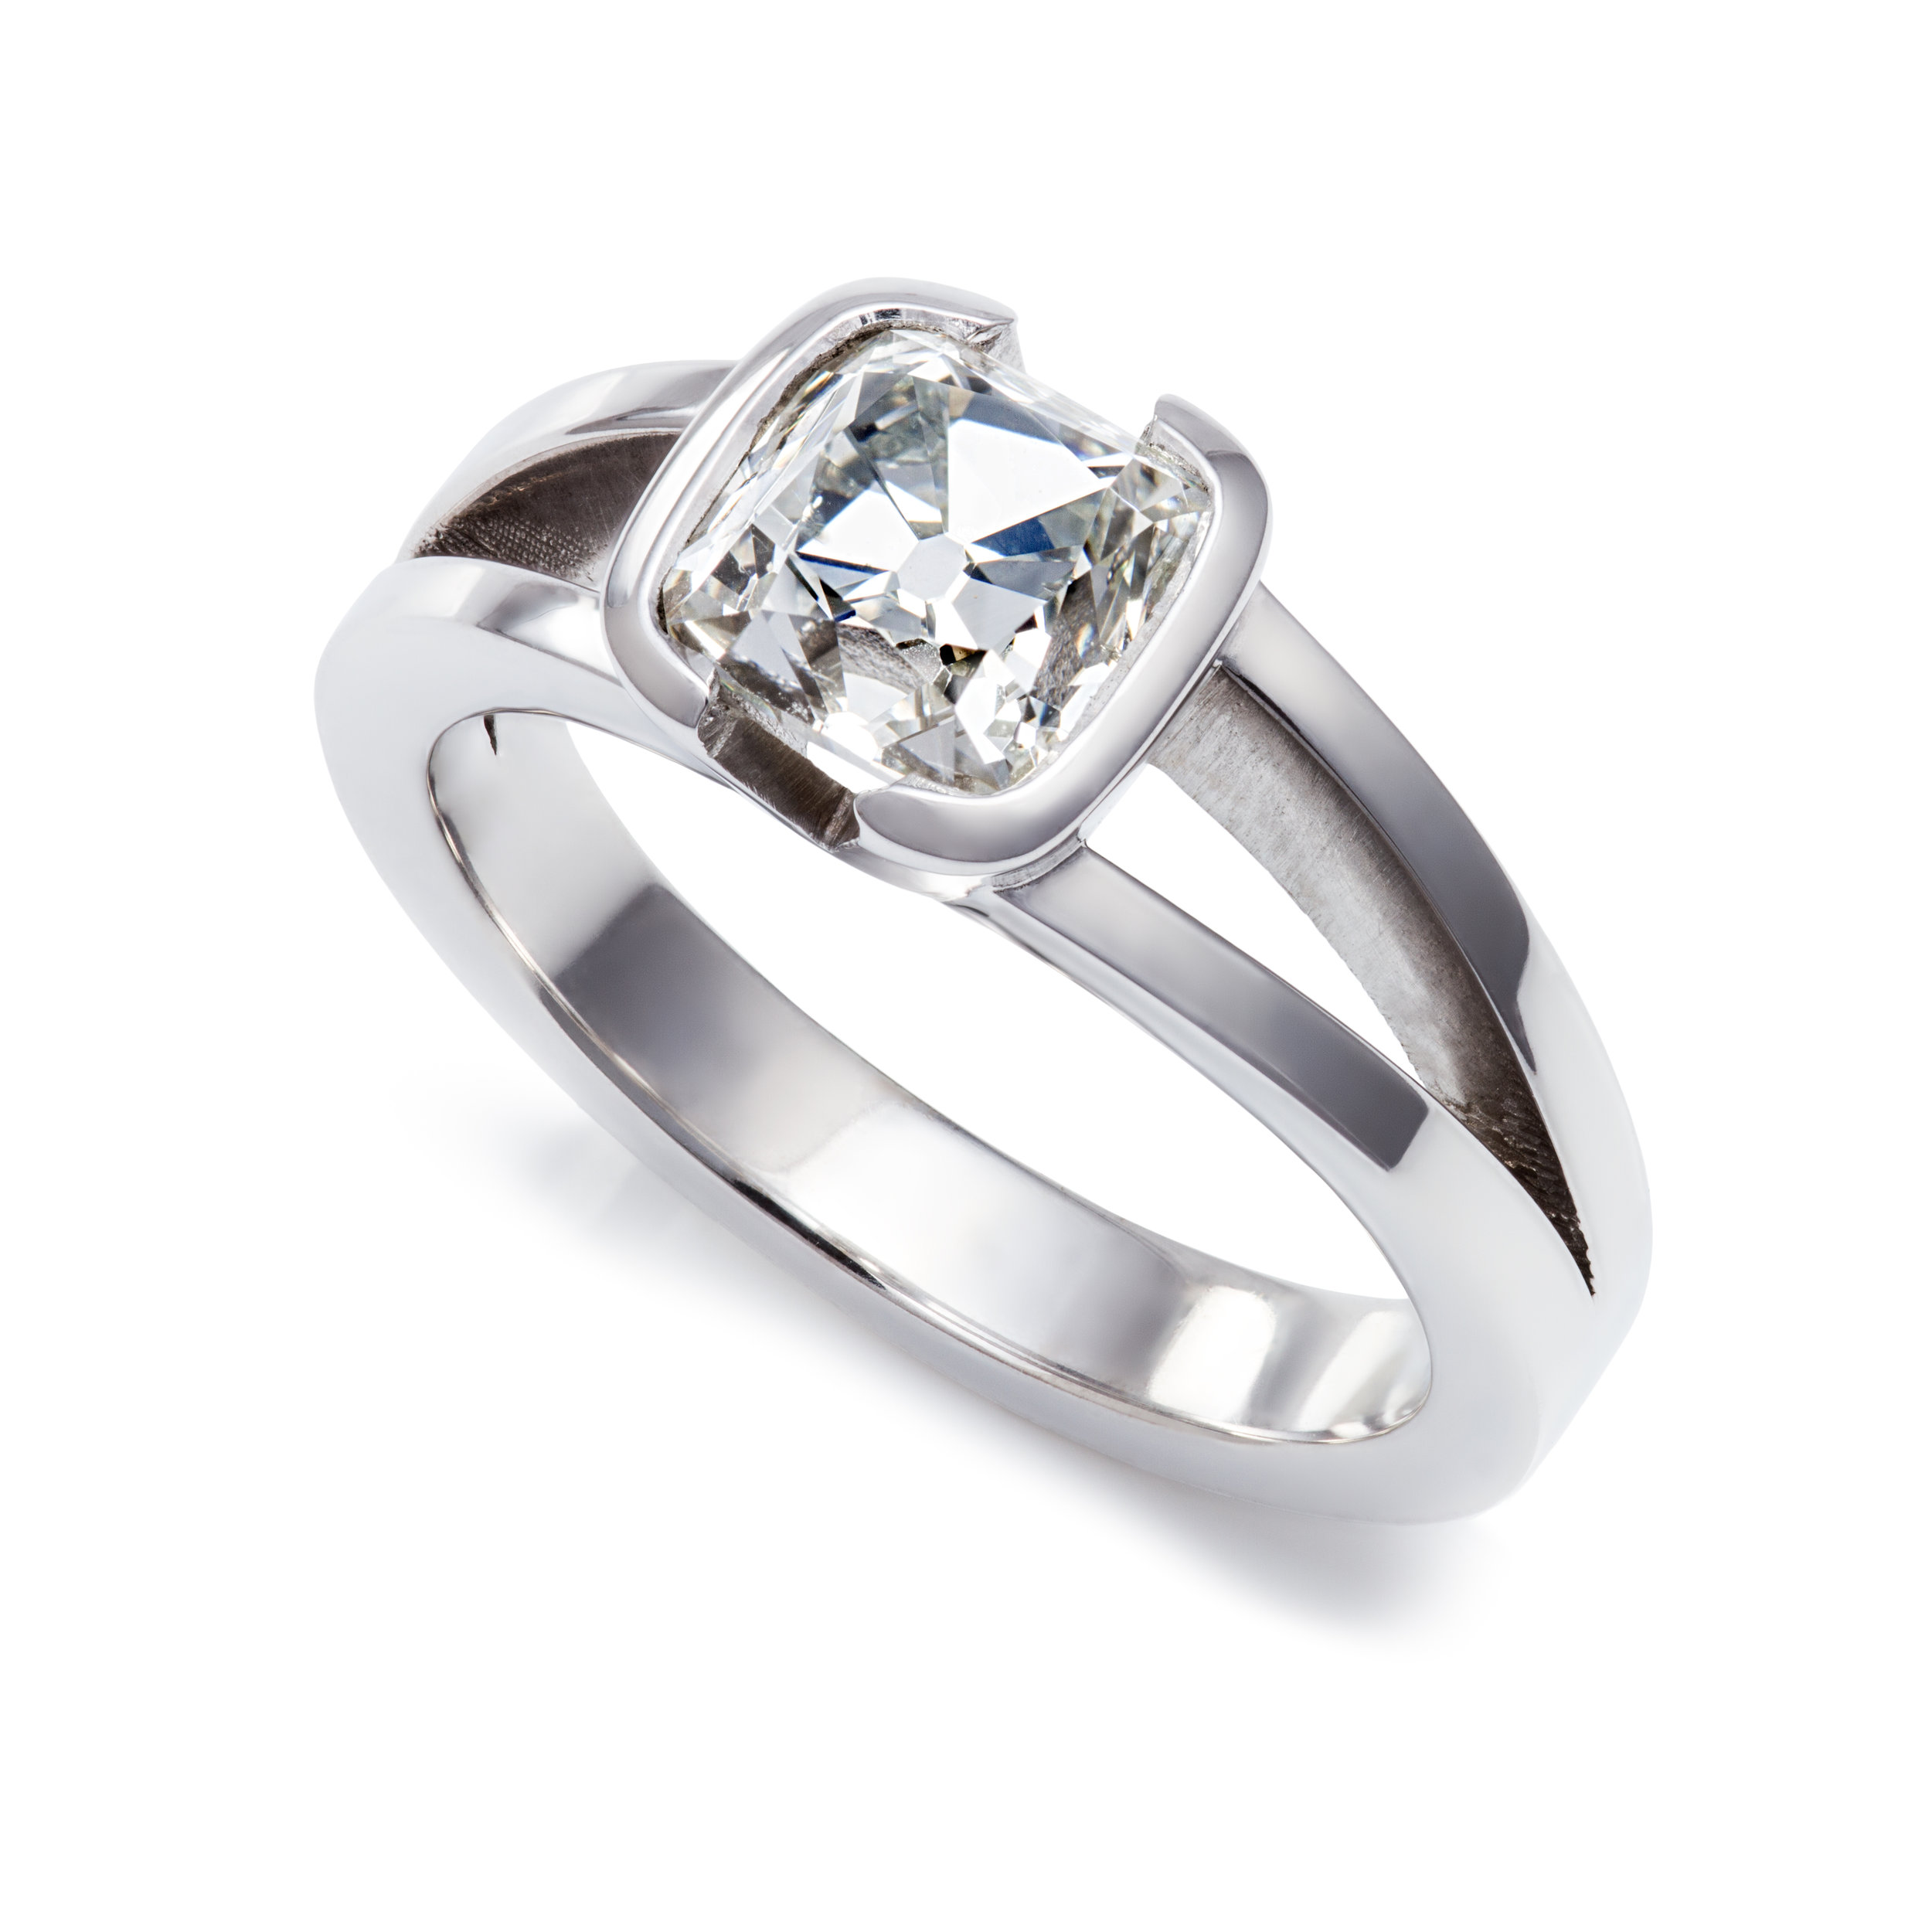 Bespoke Gallery — The Ringmaker - Engagement Ring Design Glasgow ...